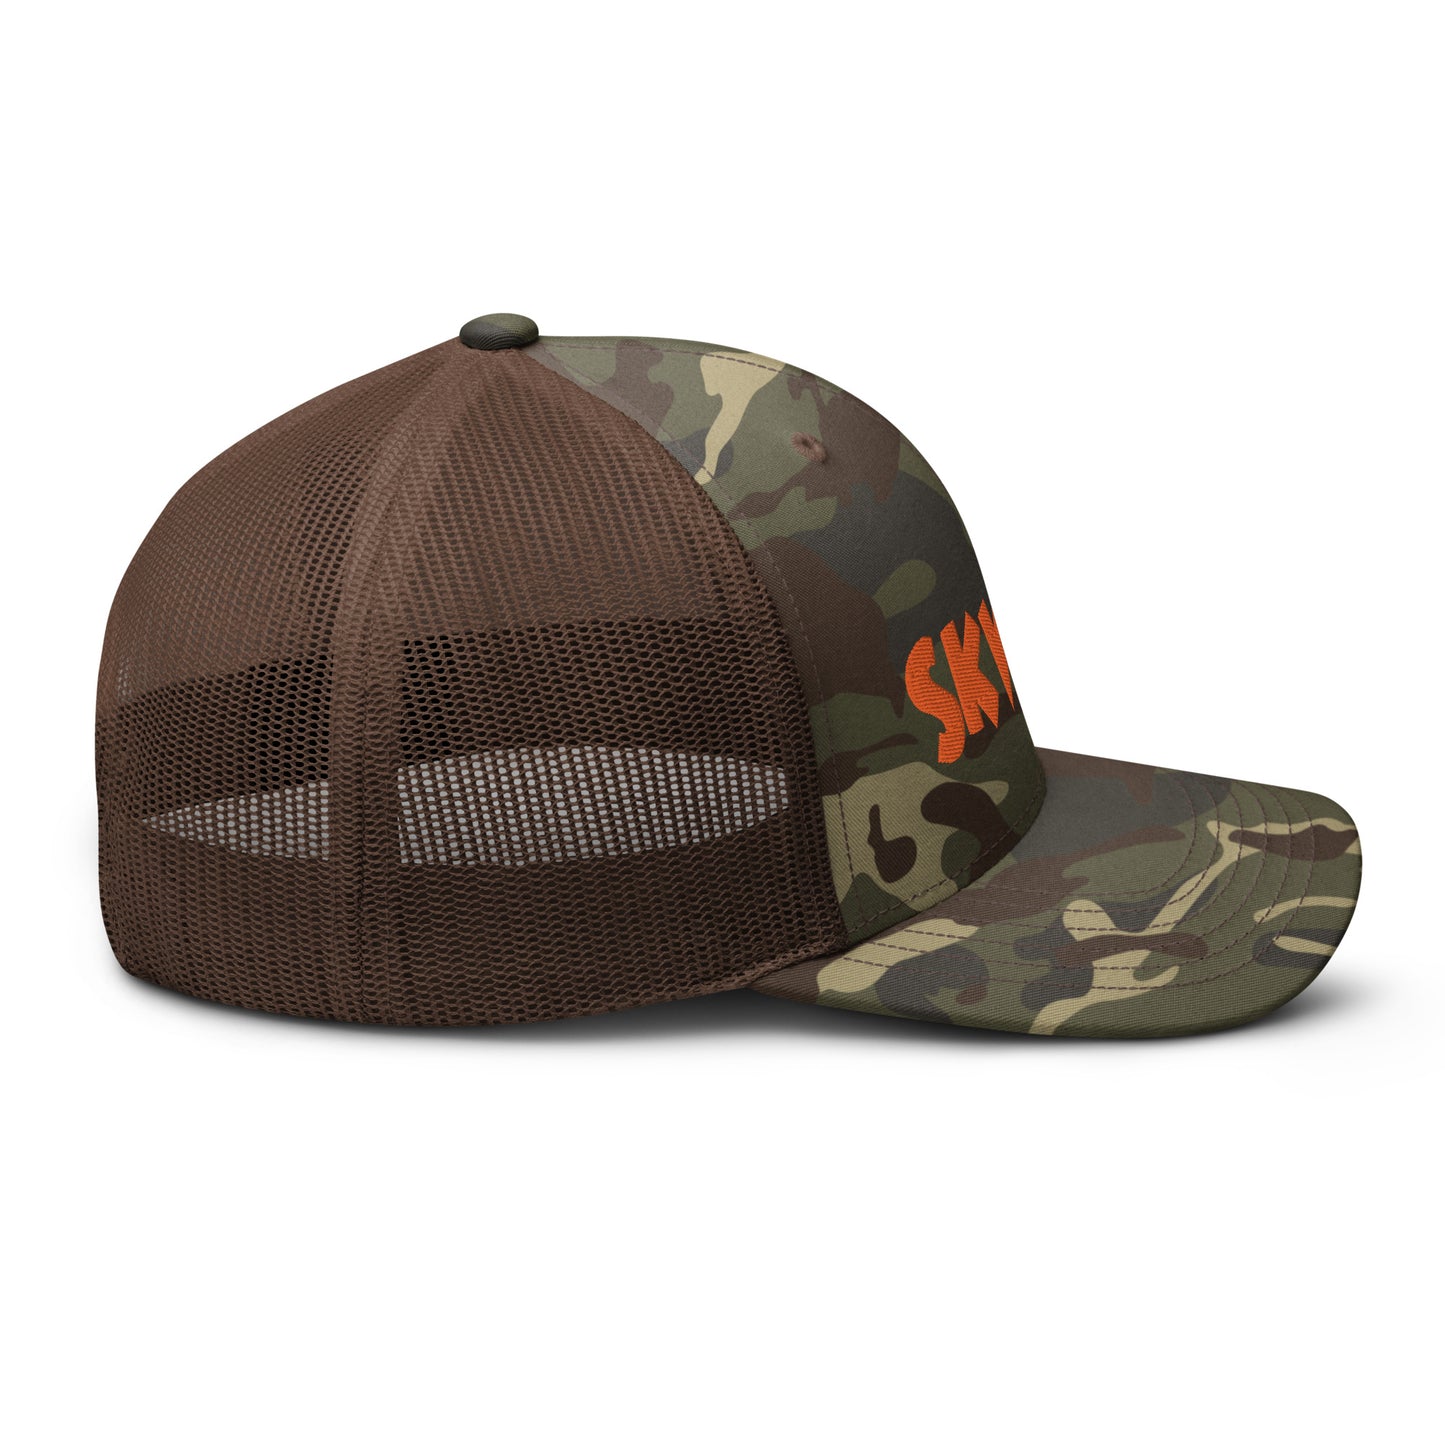 Skwok Brand / Hat / Traditional / OG Logo / 3D Puff / Camouflage / Orange